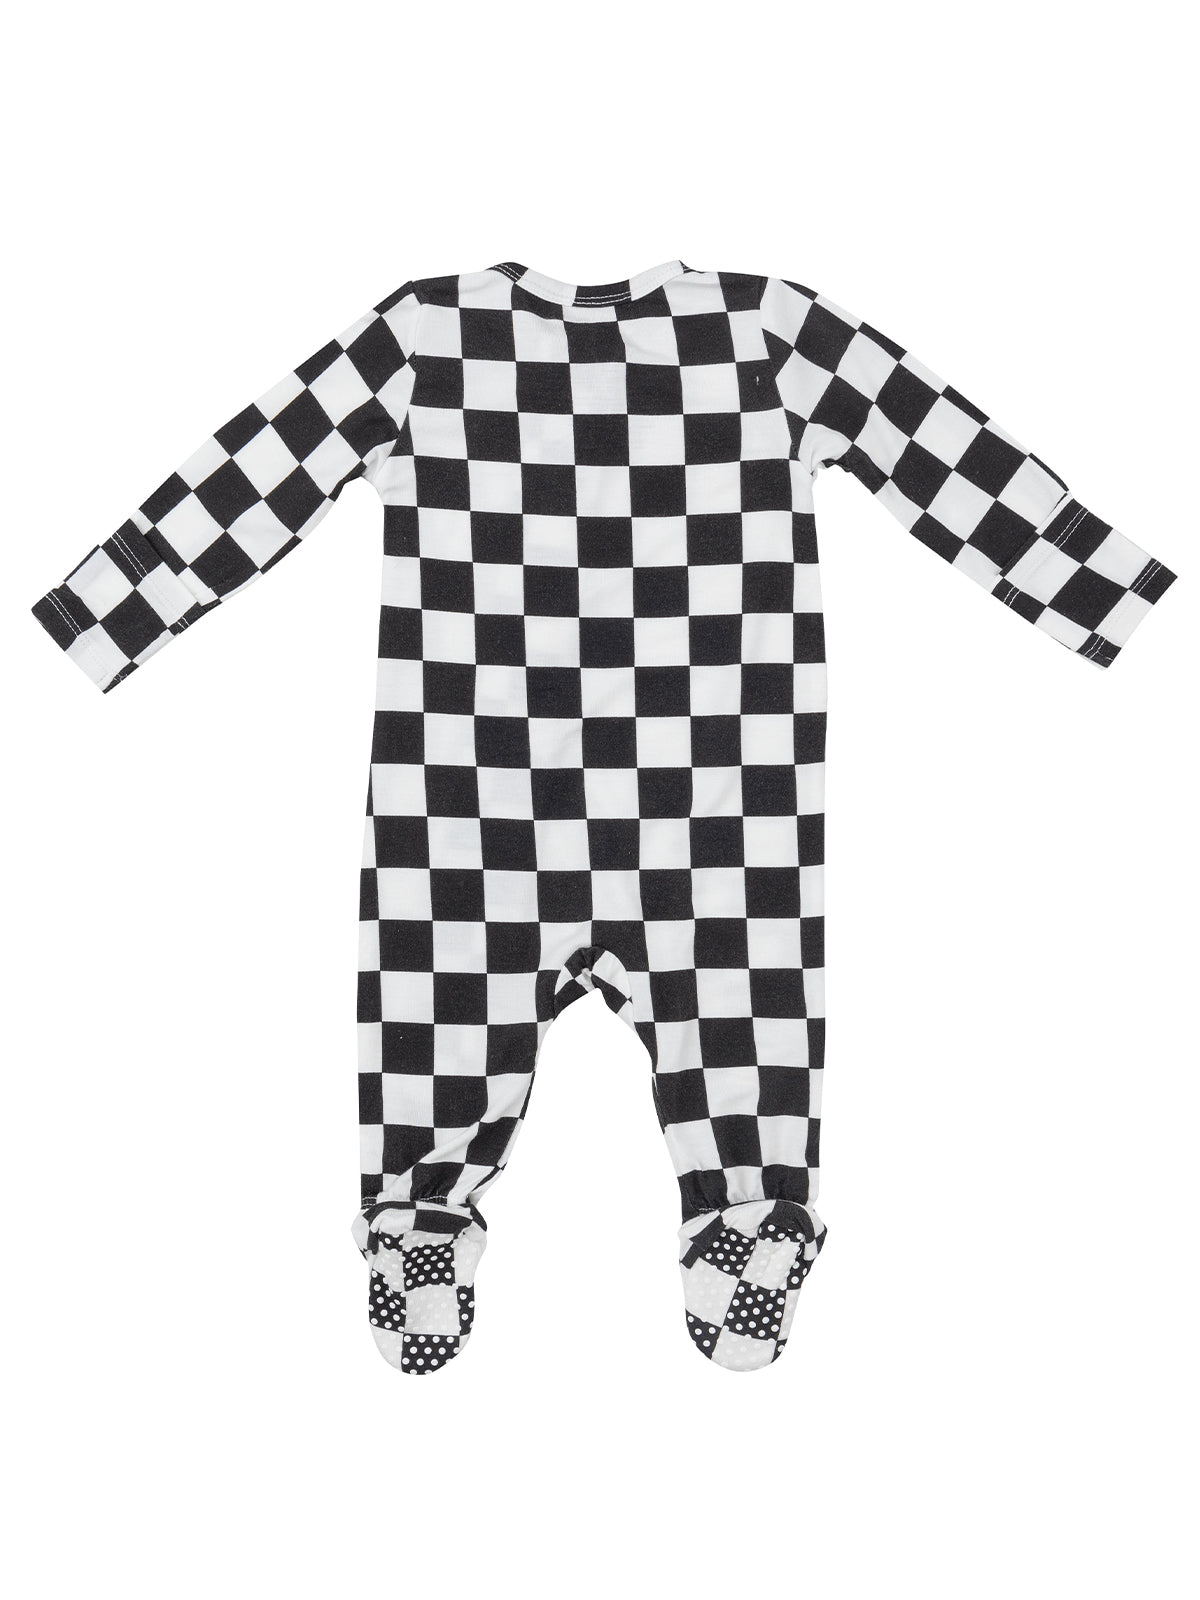 2-Way Zip Footie, Black Checkerboard